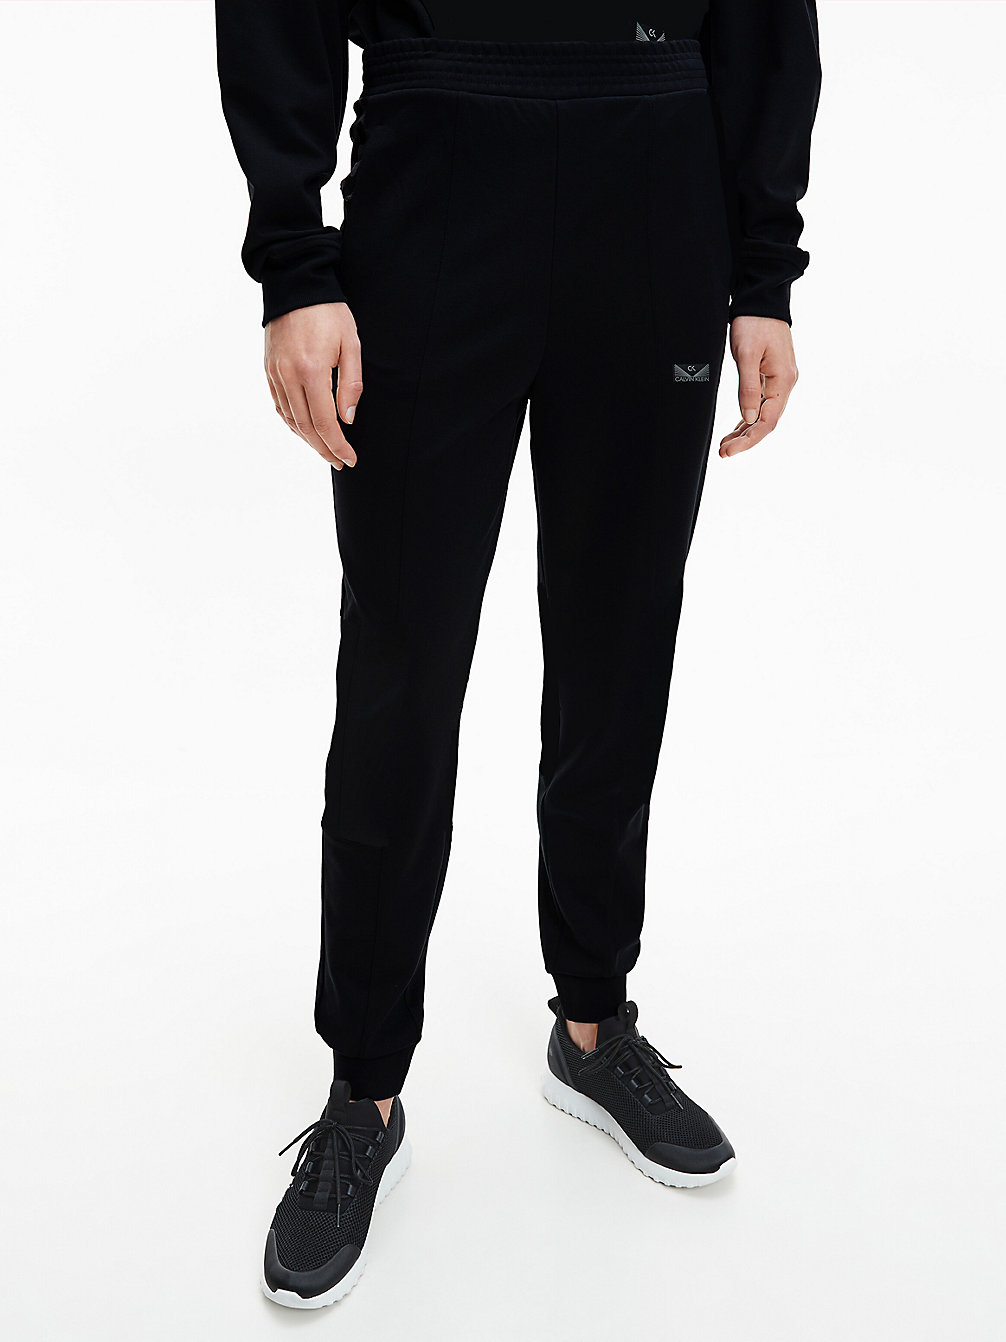 CK BLACK > Spodnie Dresowe Z Komfortowego Stretchu > undefined Kobiety - Calvin Klein